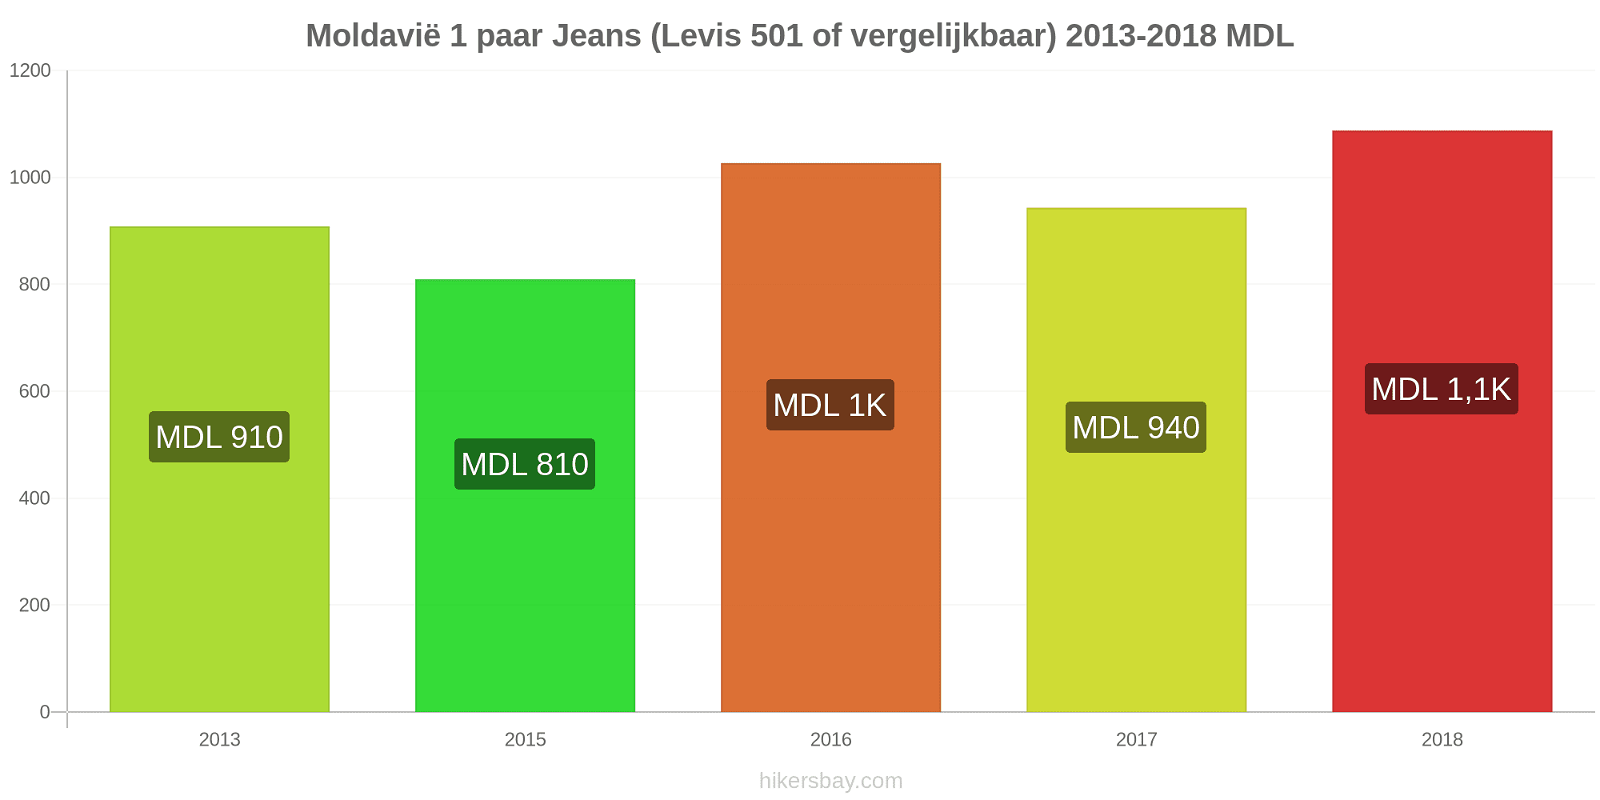 Moldavië prijswijzigingen 1 paar jeans (Levis 501 of vergelijkbaar) hikersbay.com